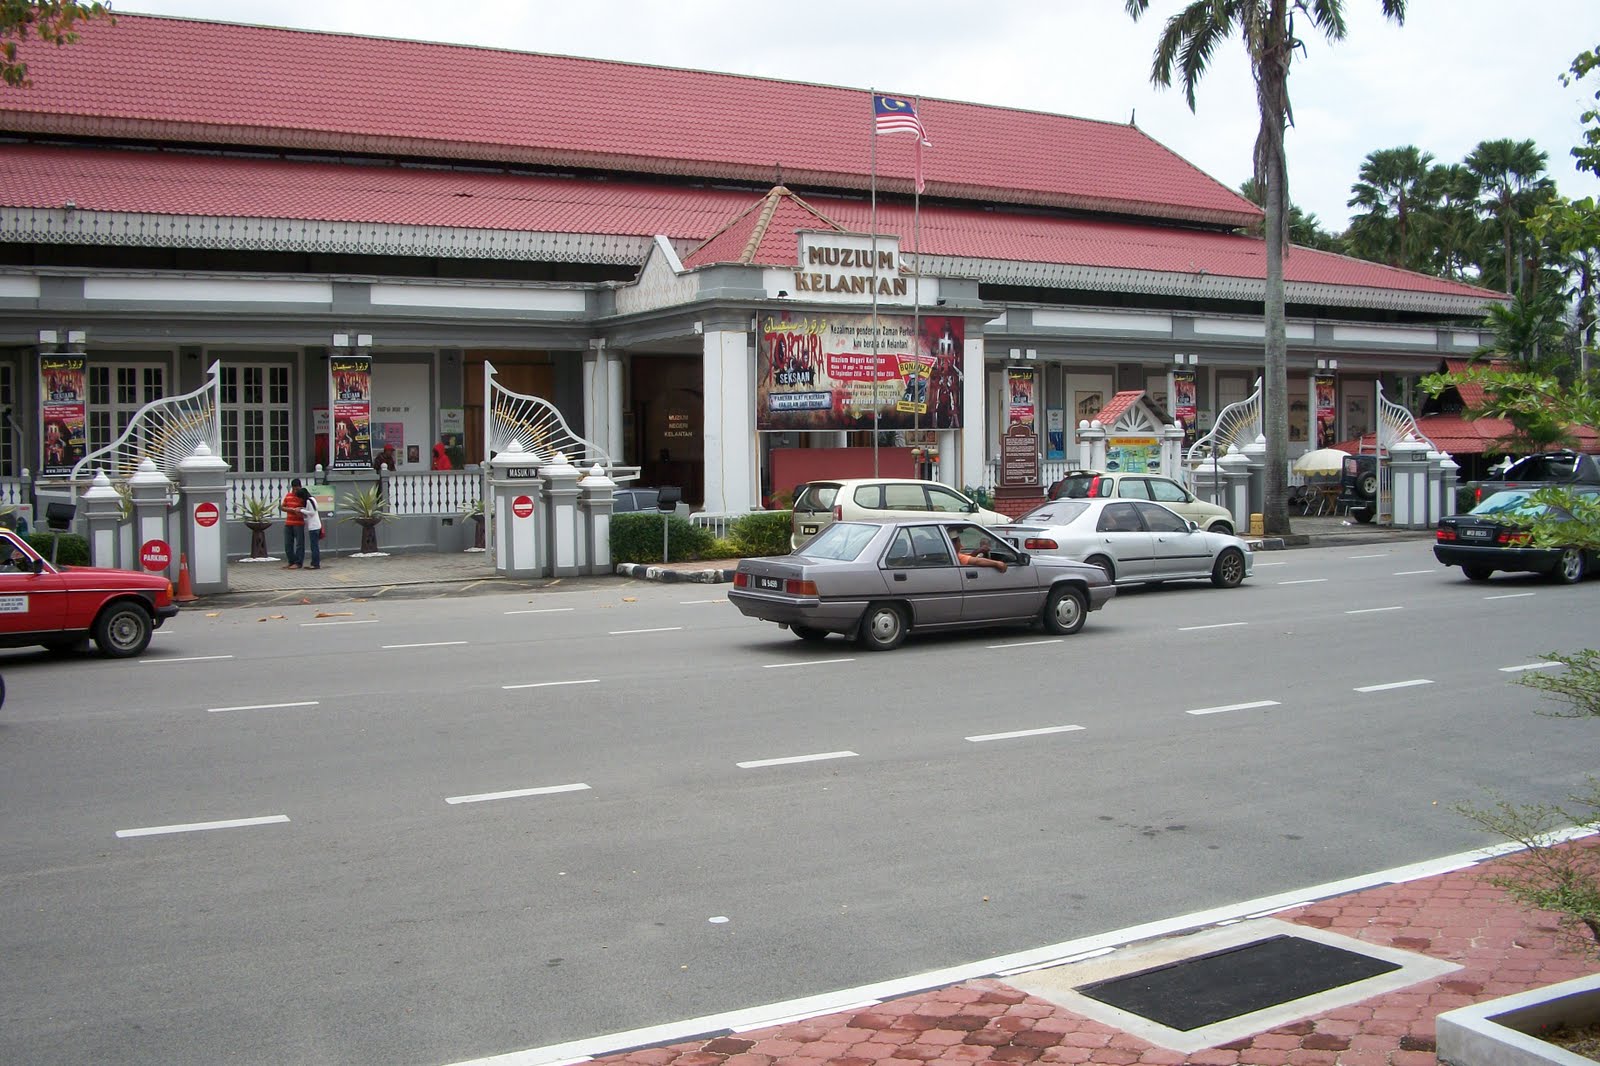 Muzium Negeri Kelantan